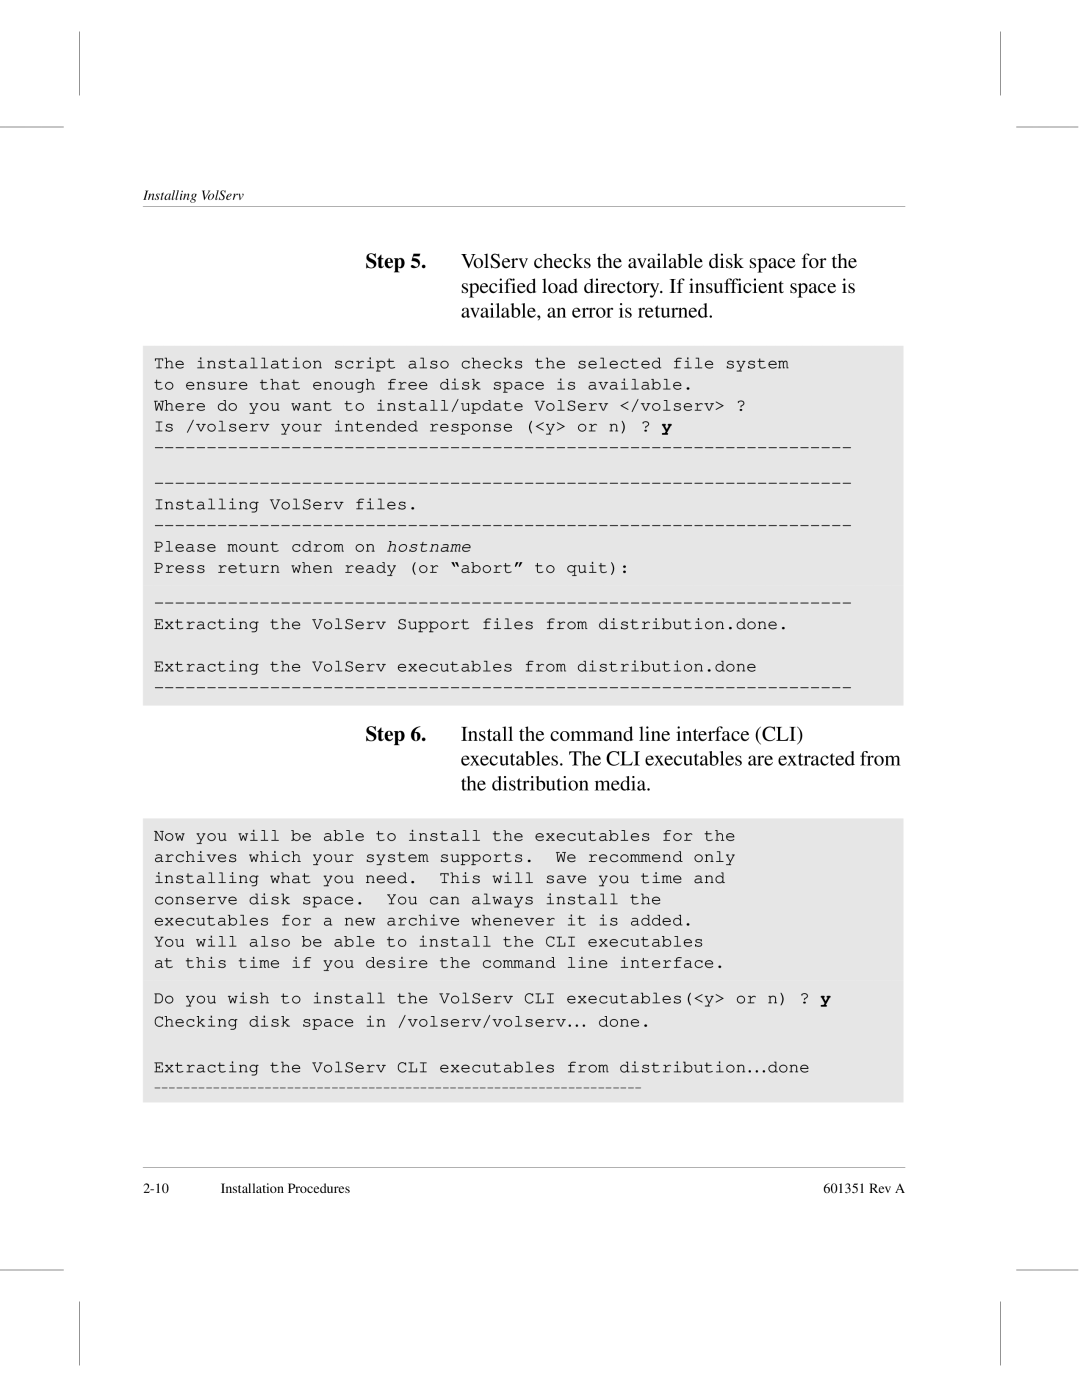 ADIC Version 5.0 manual Installing VolServ 